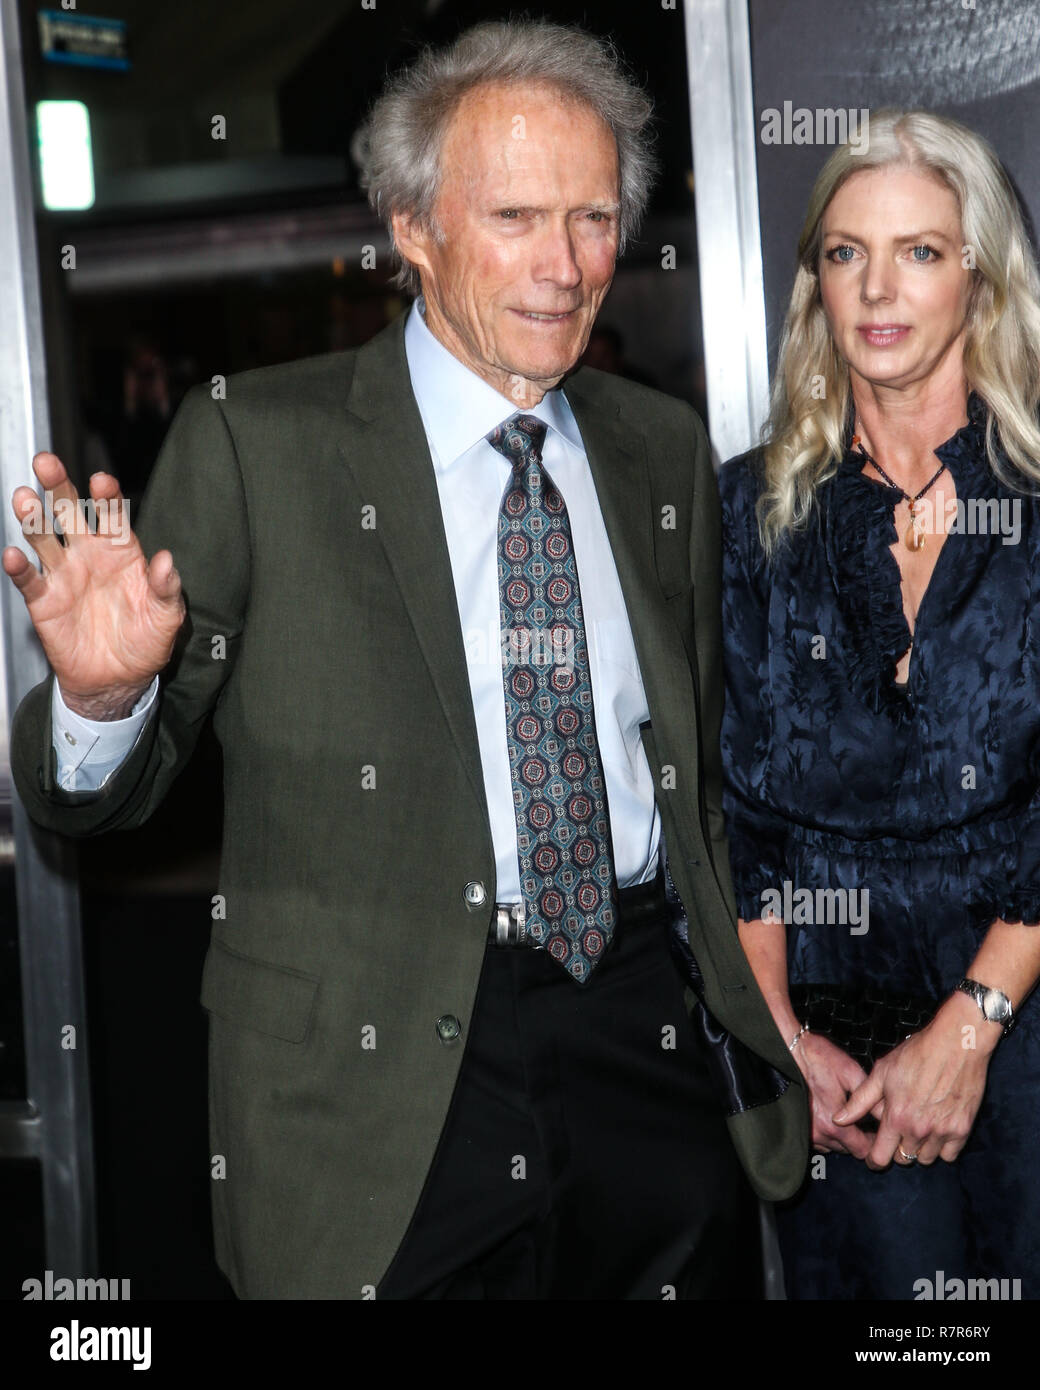 WESTWOOD, LOS ANGELES, CA, USA - 10 DÉCEMBRE : Directeur/acteur Clint  Eastwood et petite amie Christina Sandera arrivent à la Los Angeles  Premiere de Warner Bros Pictures' 'La mule' qui s'est tenue